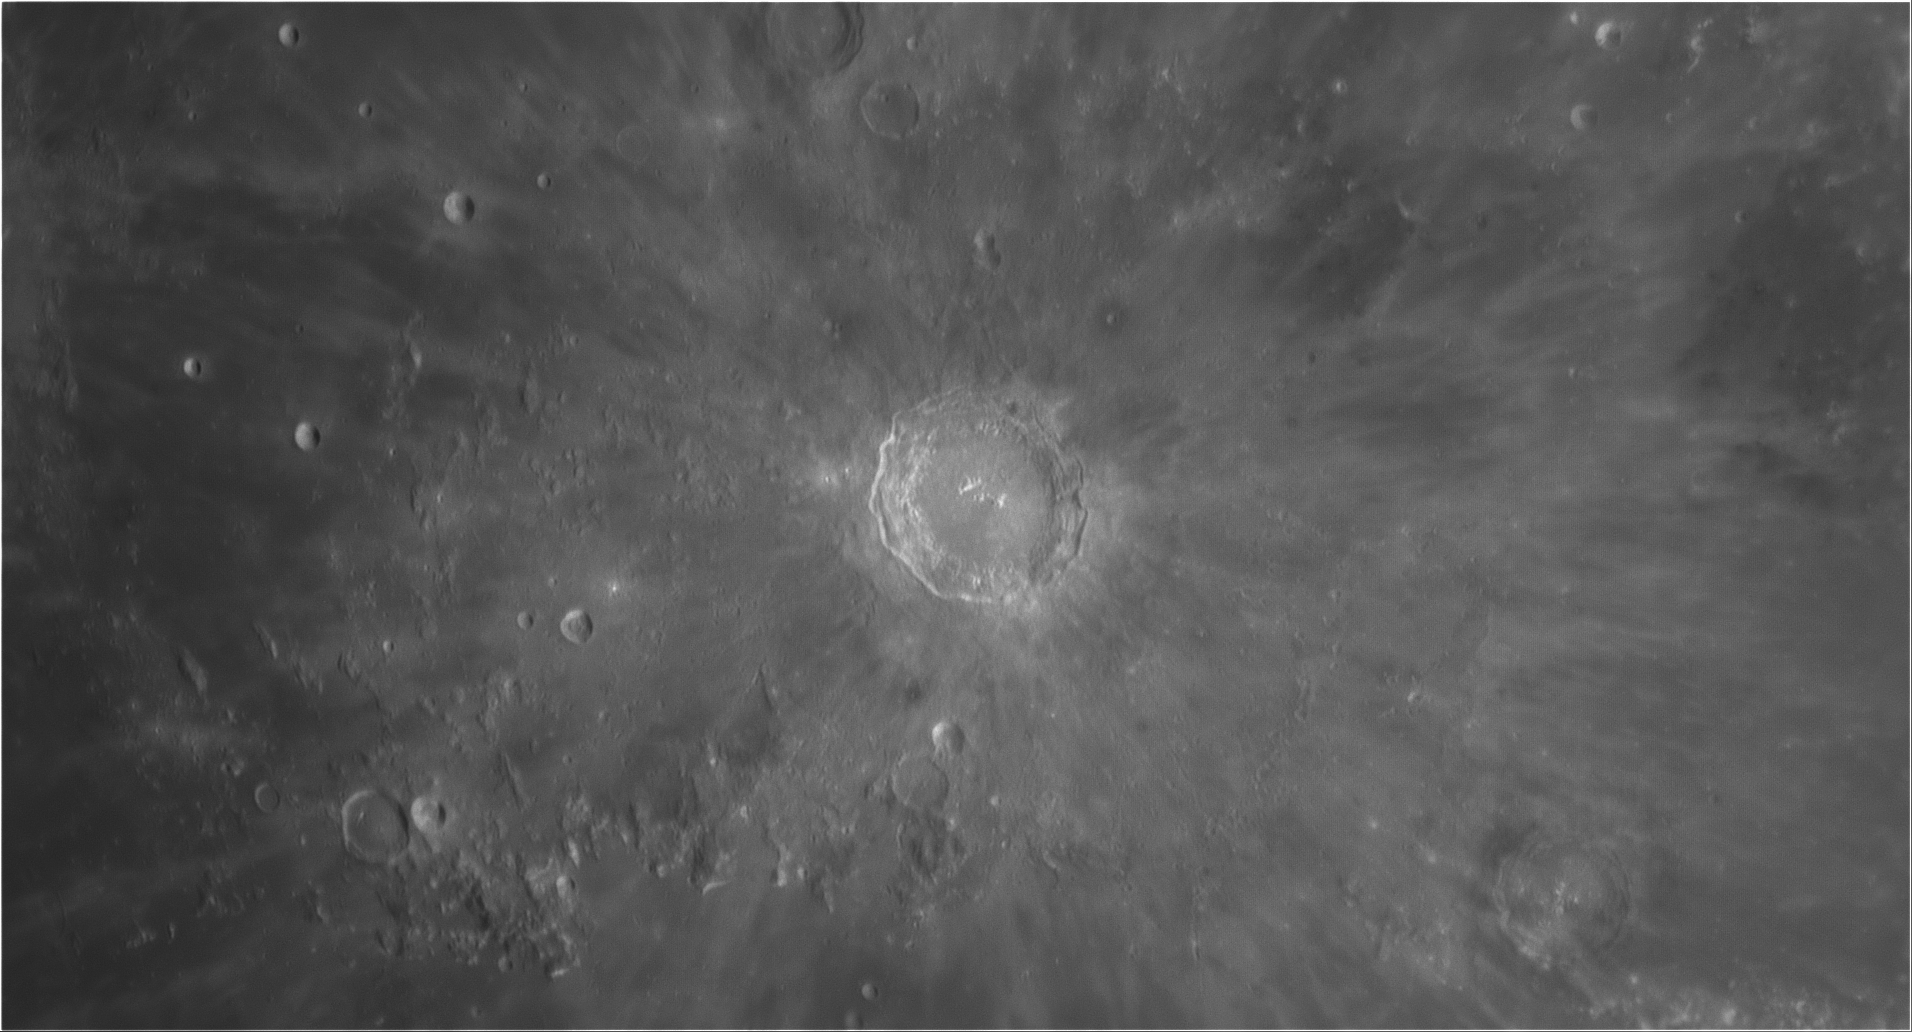 Moon_C8HD_Copernicus_colong063_[P10_212217_2021_04_24_R_Gain=200(off)_4_lapl6_ap16045]_P2a-w235-g.jpg